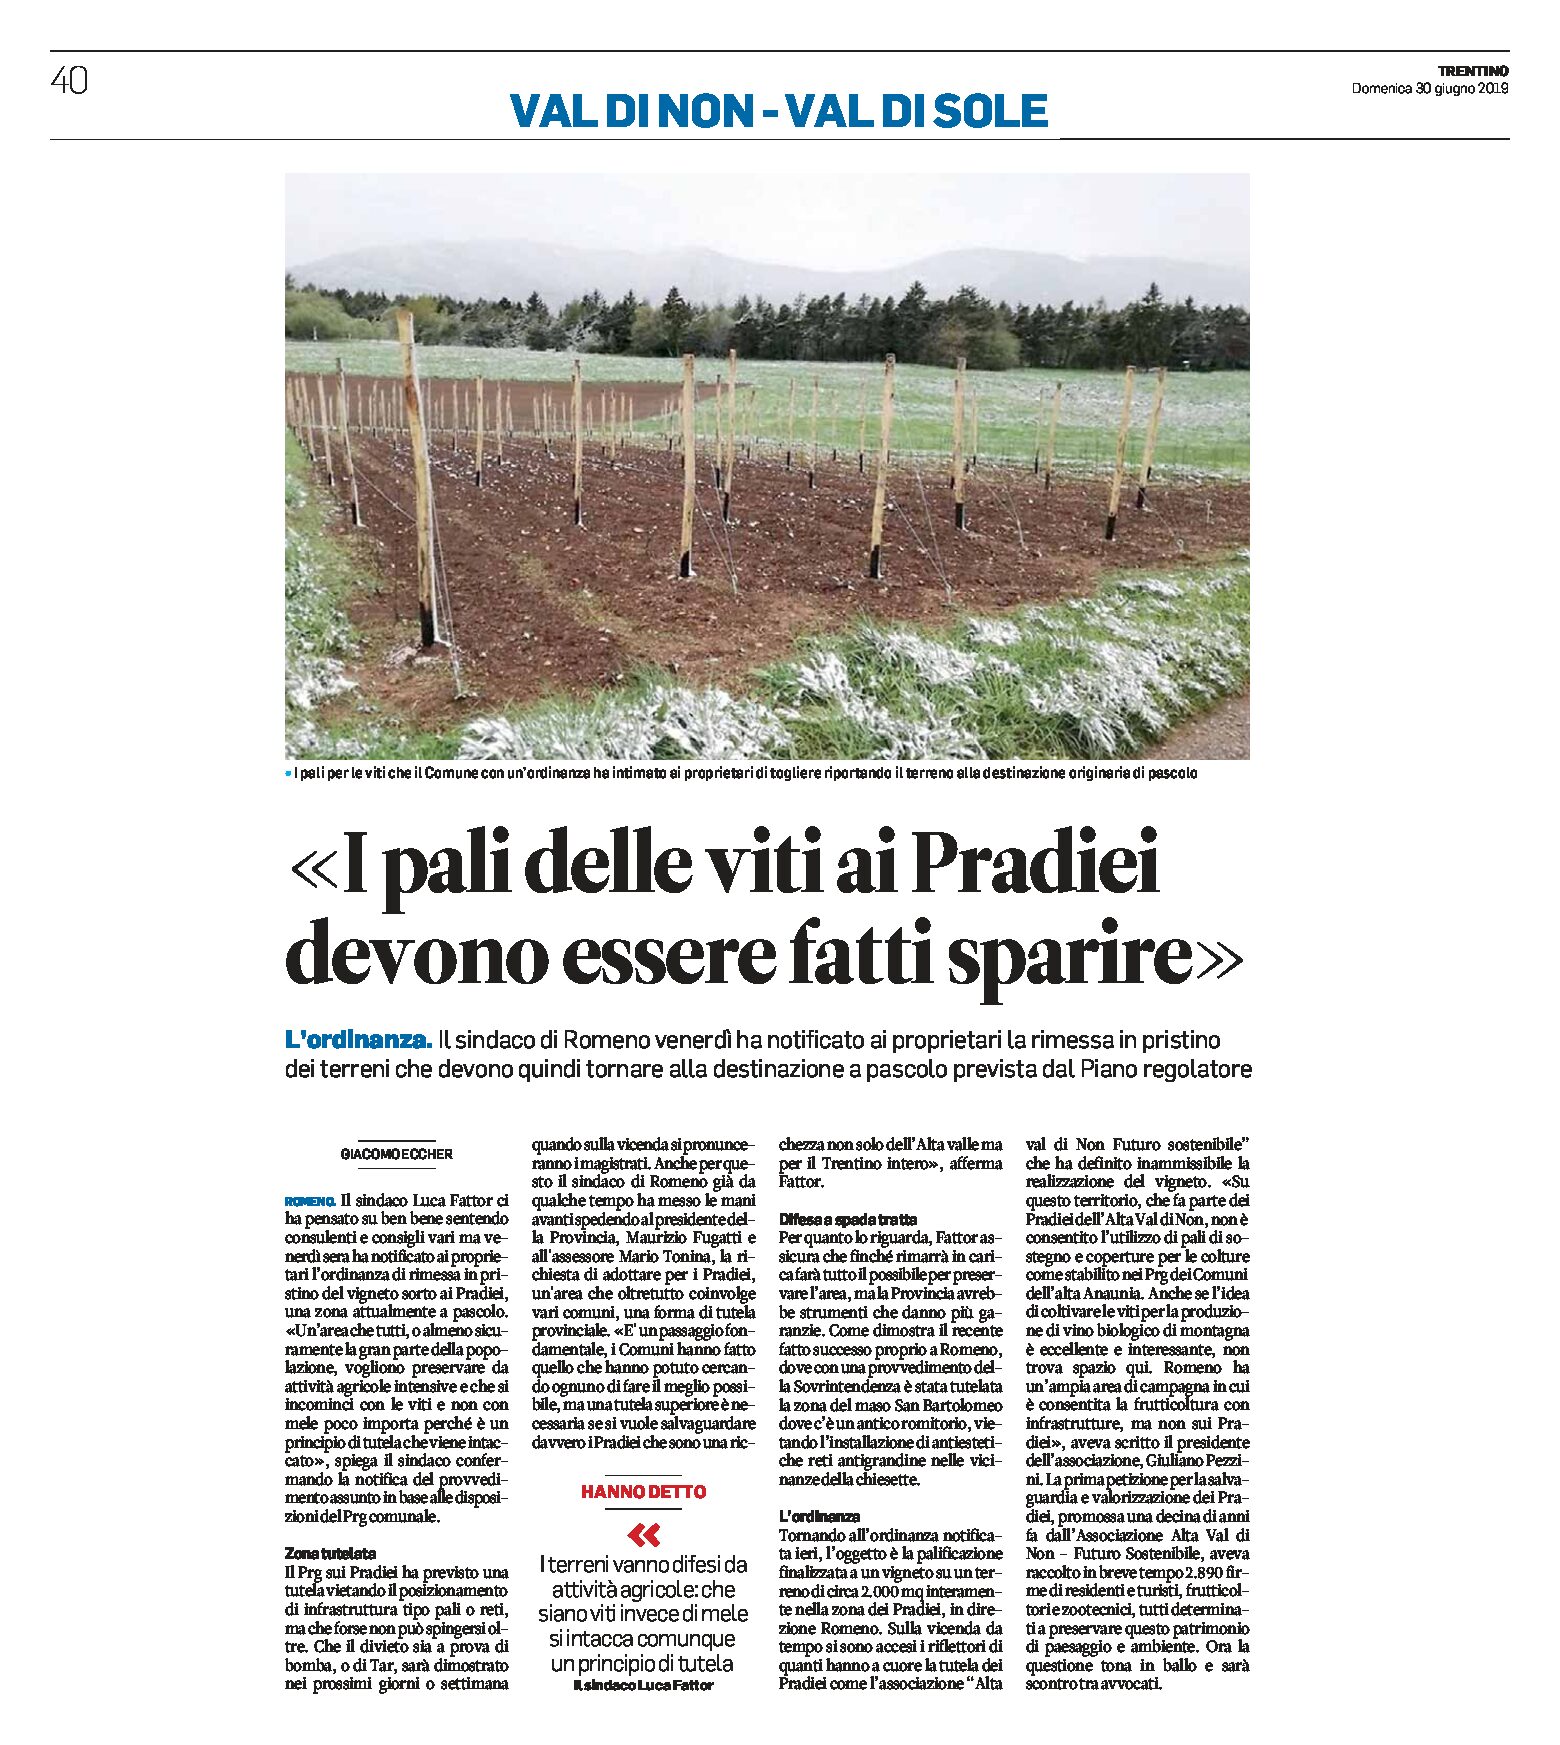 Romeno, Pradiei: i pali delle viti devono esser fatti sparire